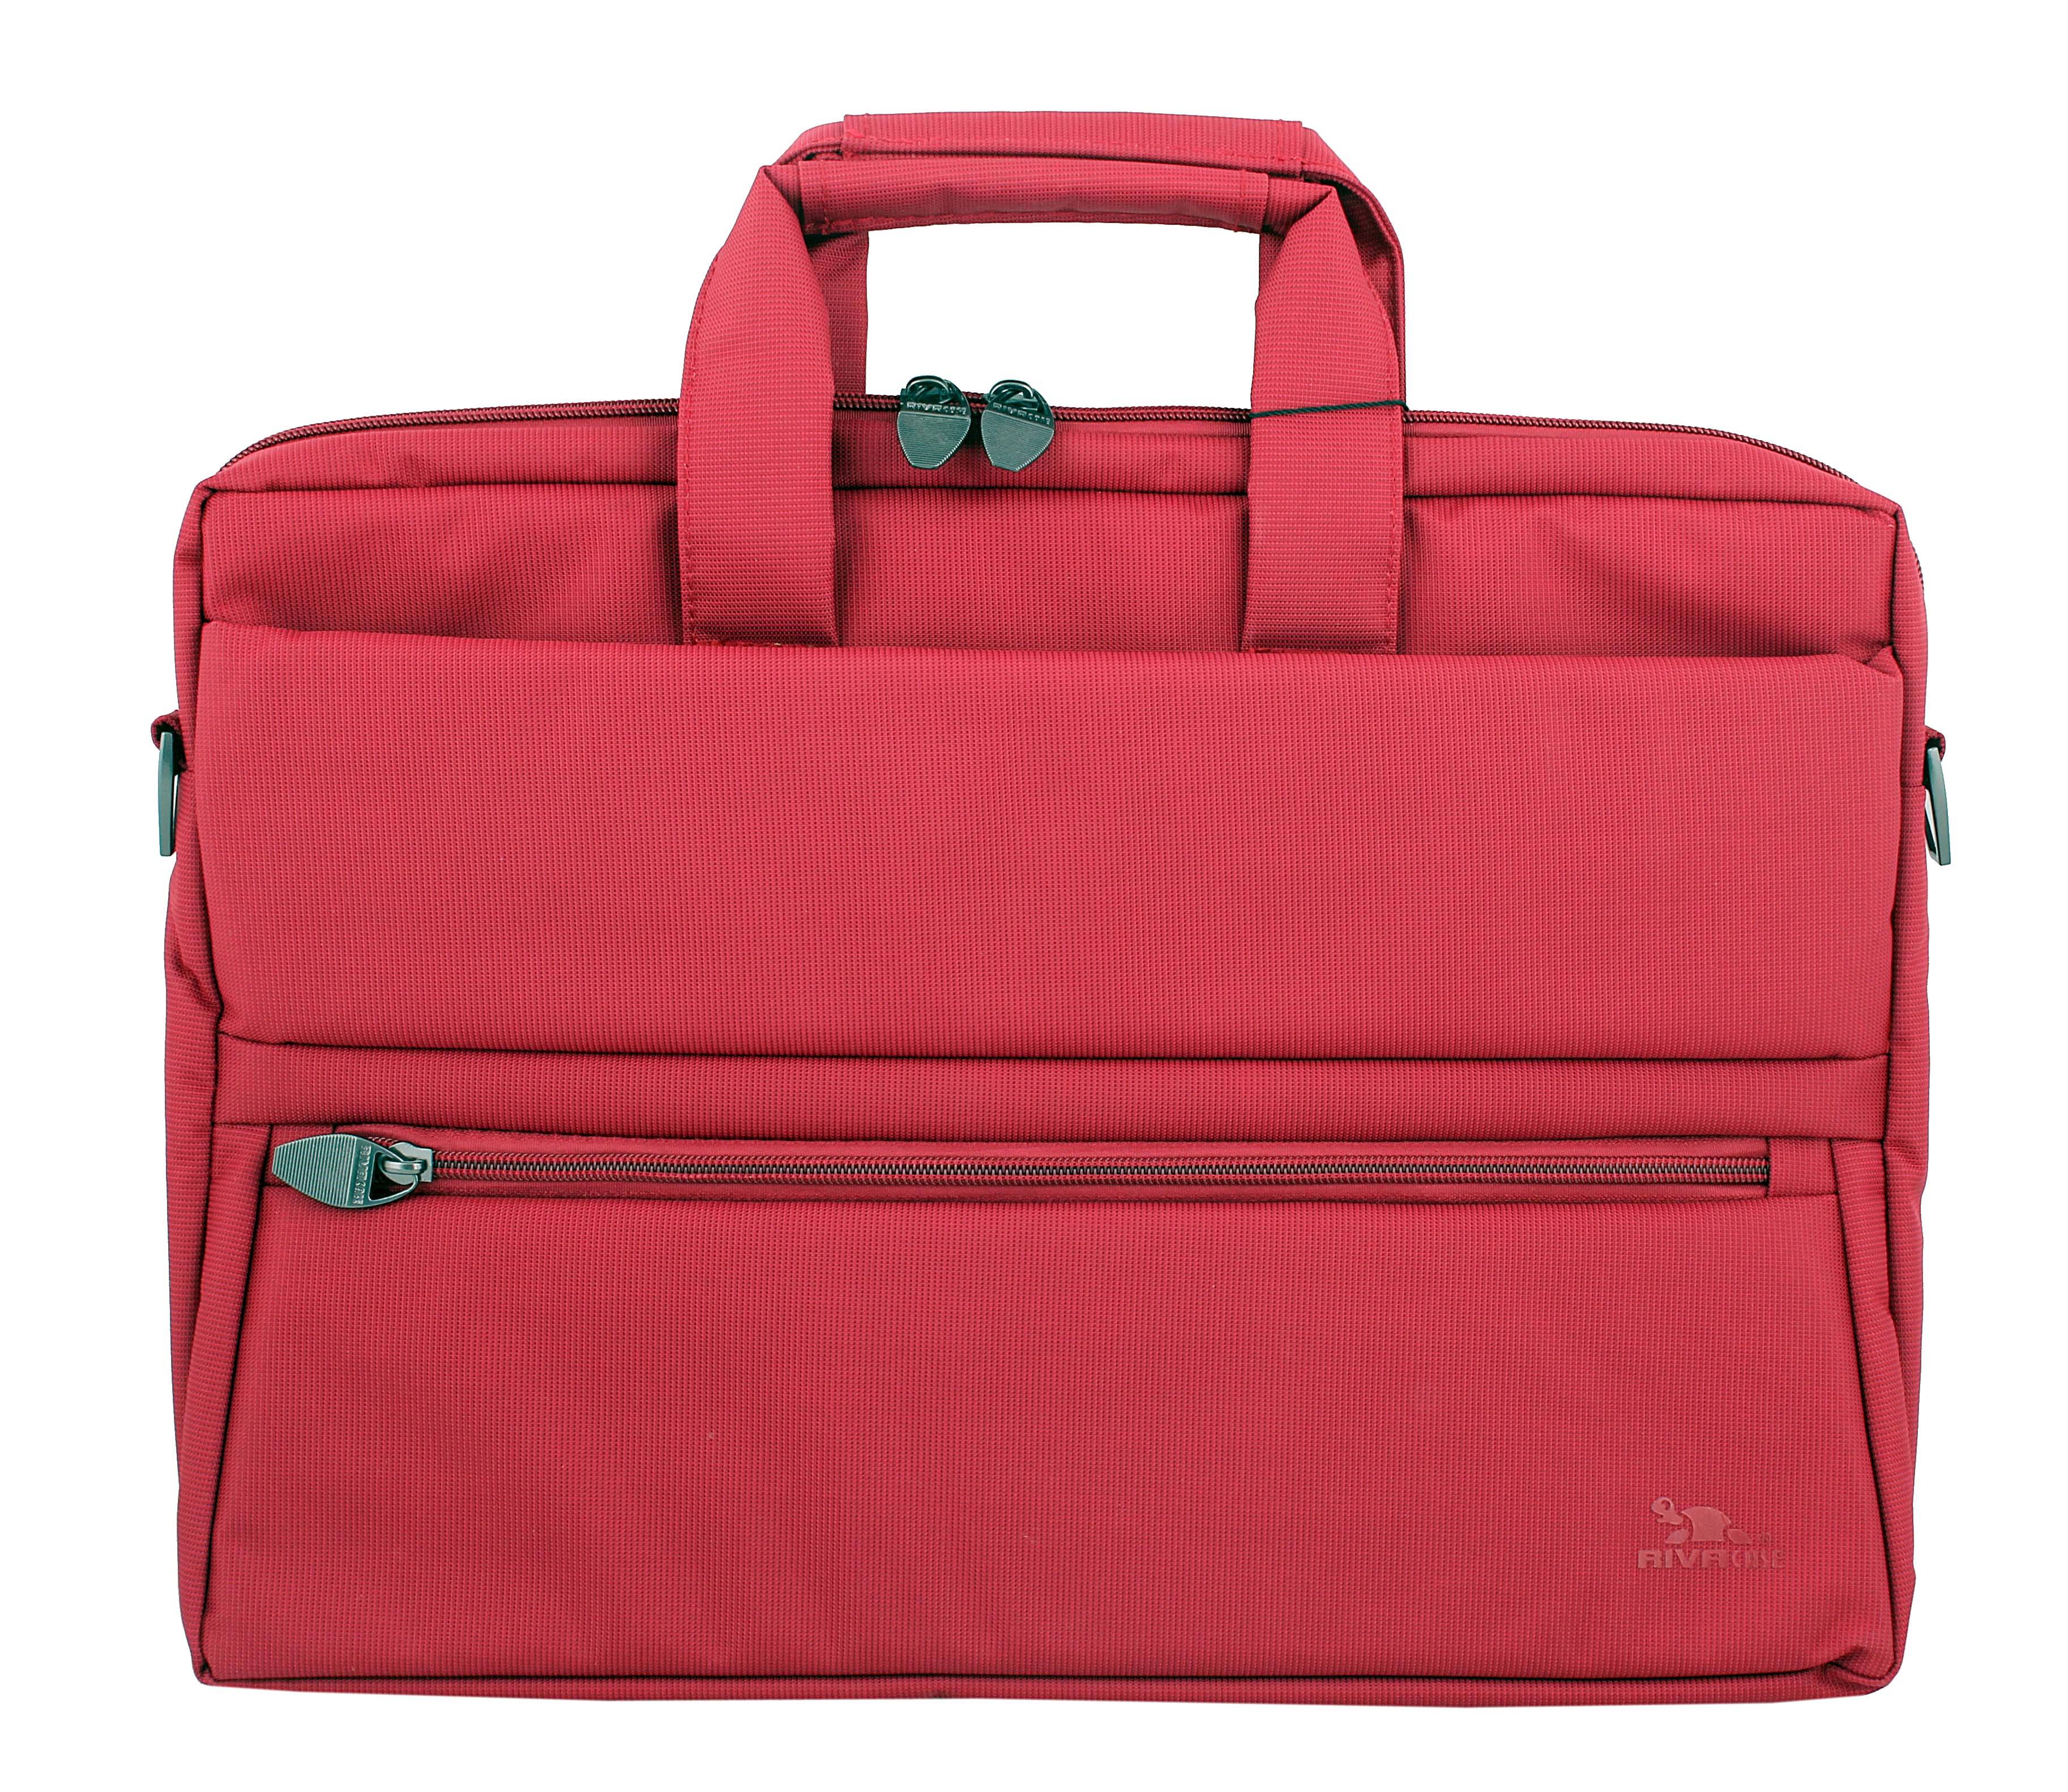 Кейс для ноутбука Riva Case Rivacase 8630 Red Для Ноутбука 15.6, цвет красный, размер 15 175095 - фото 1